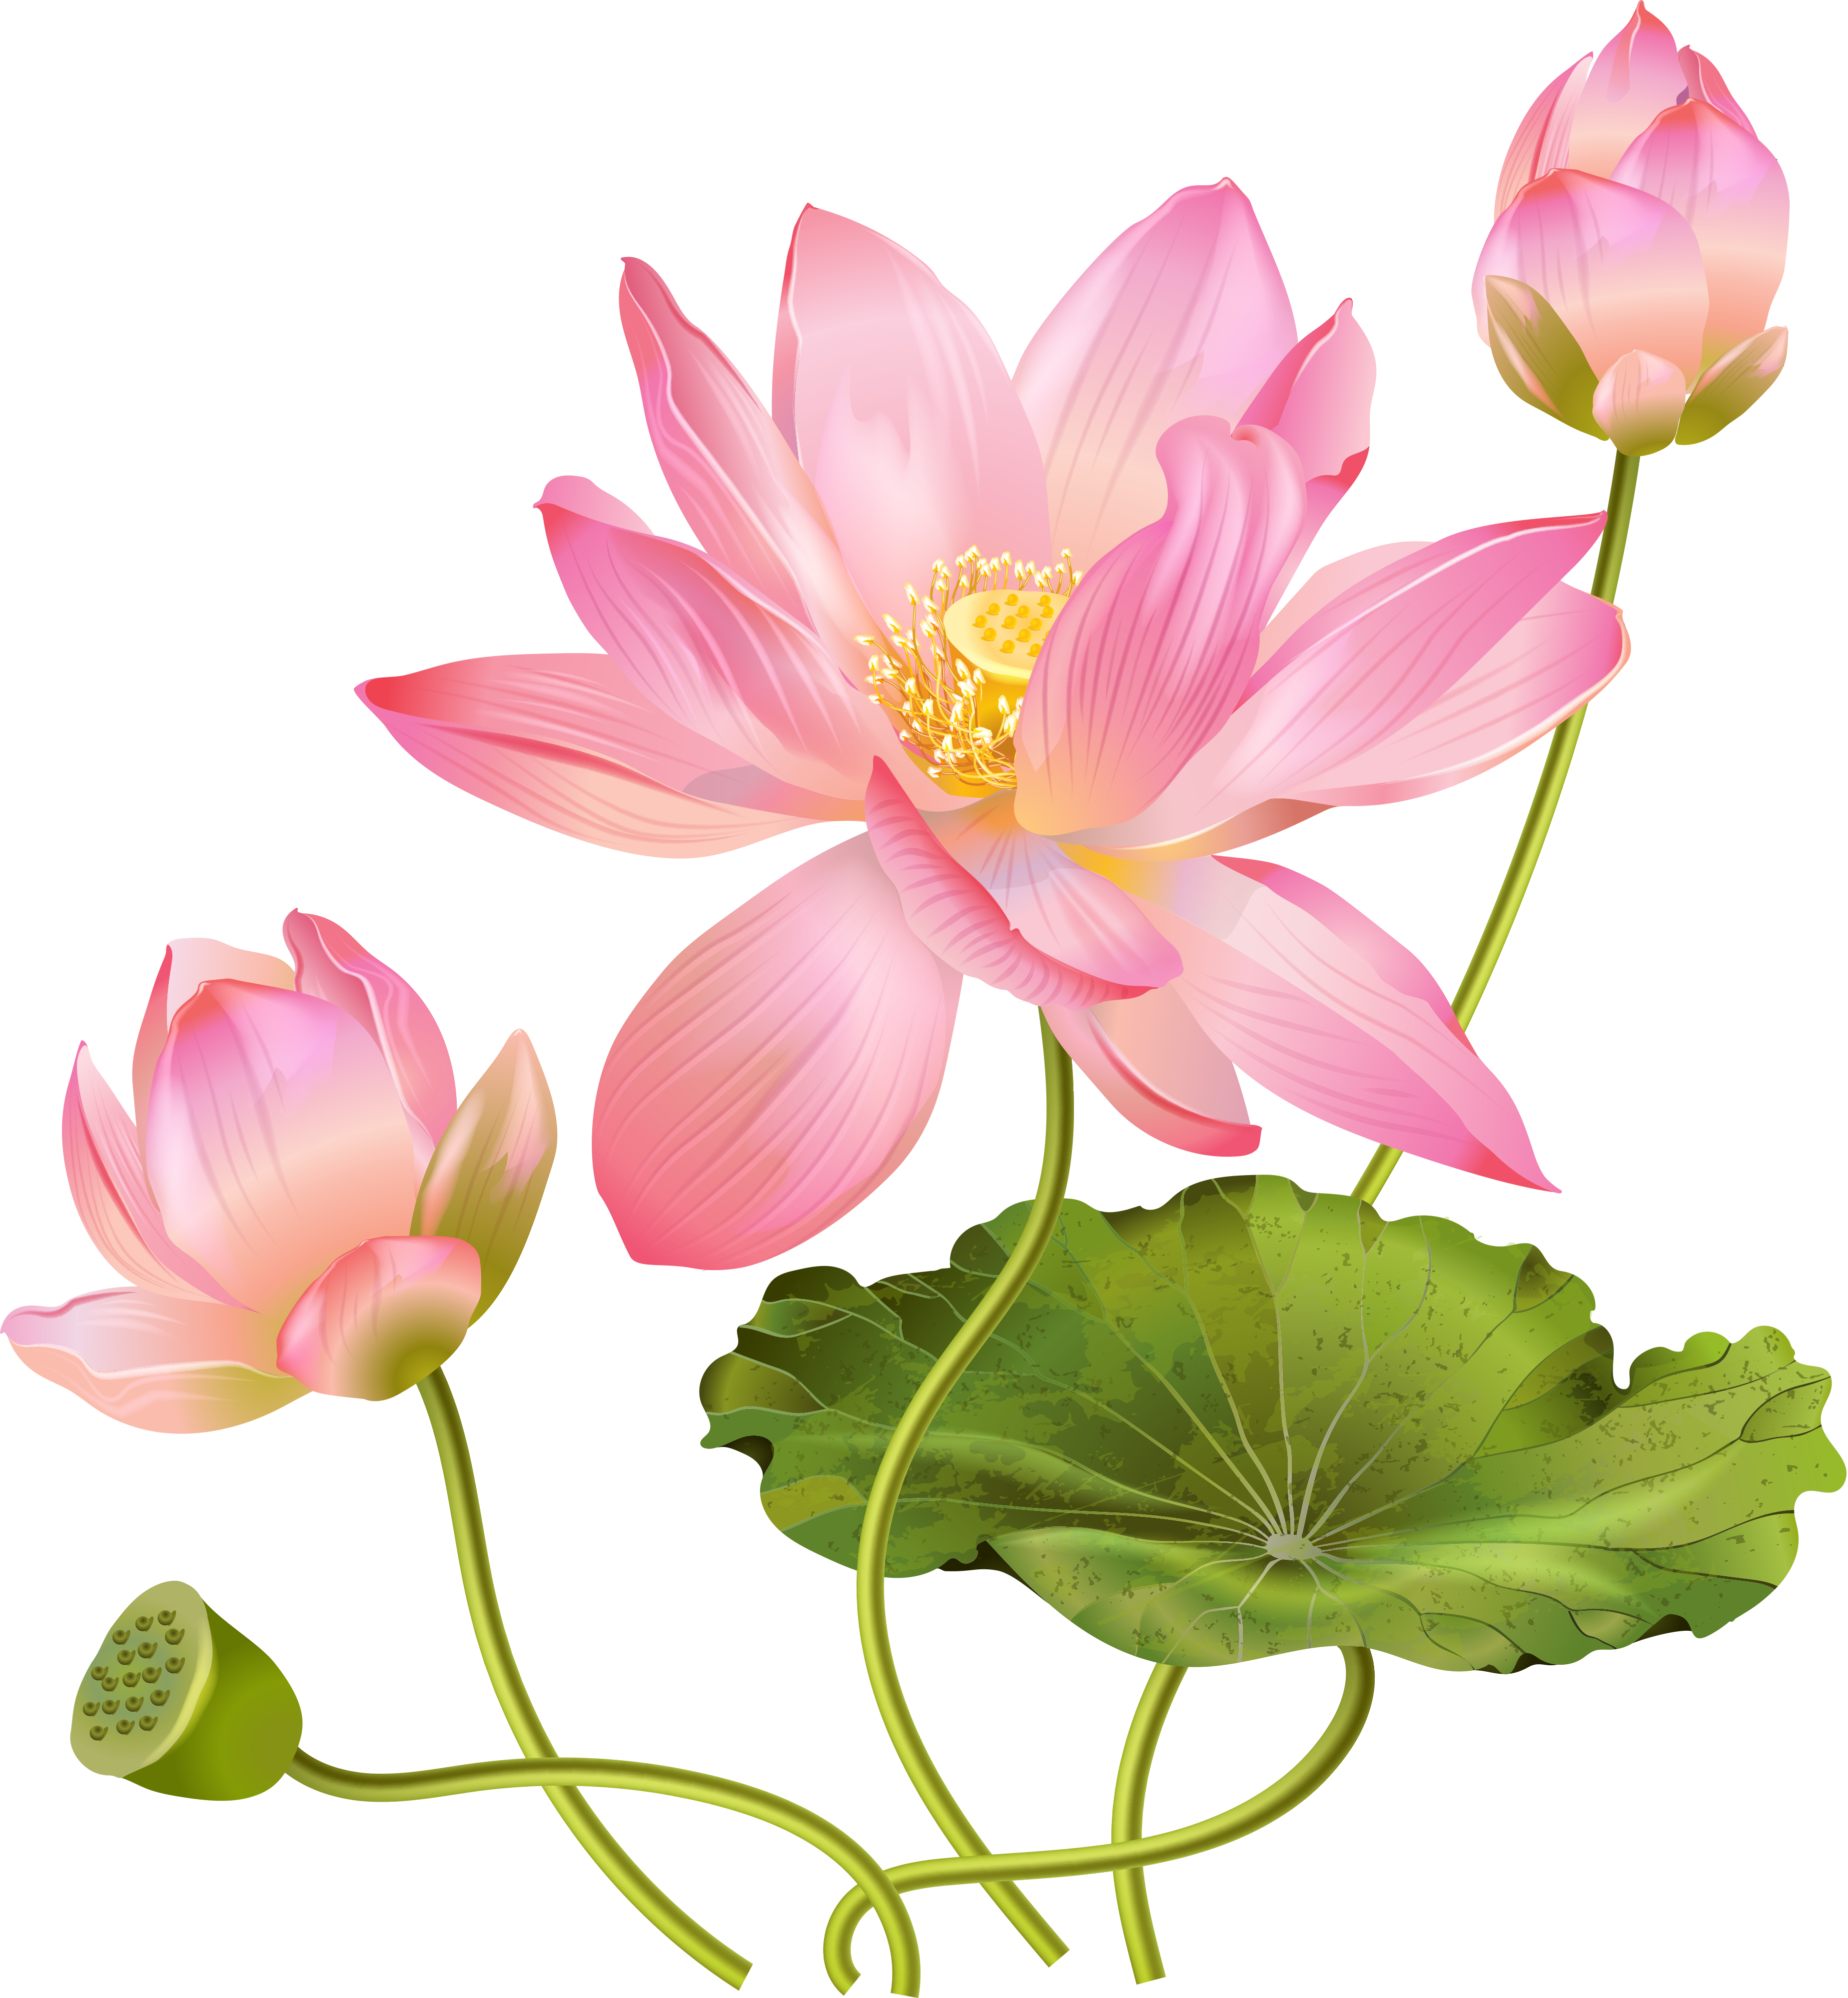 Pink Lotus Flower Free Photo PNG Image